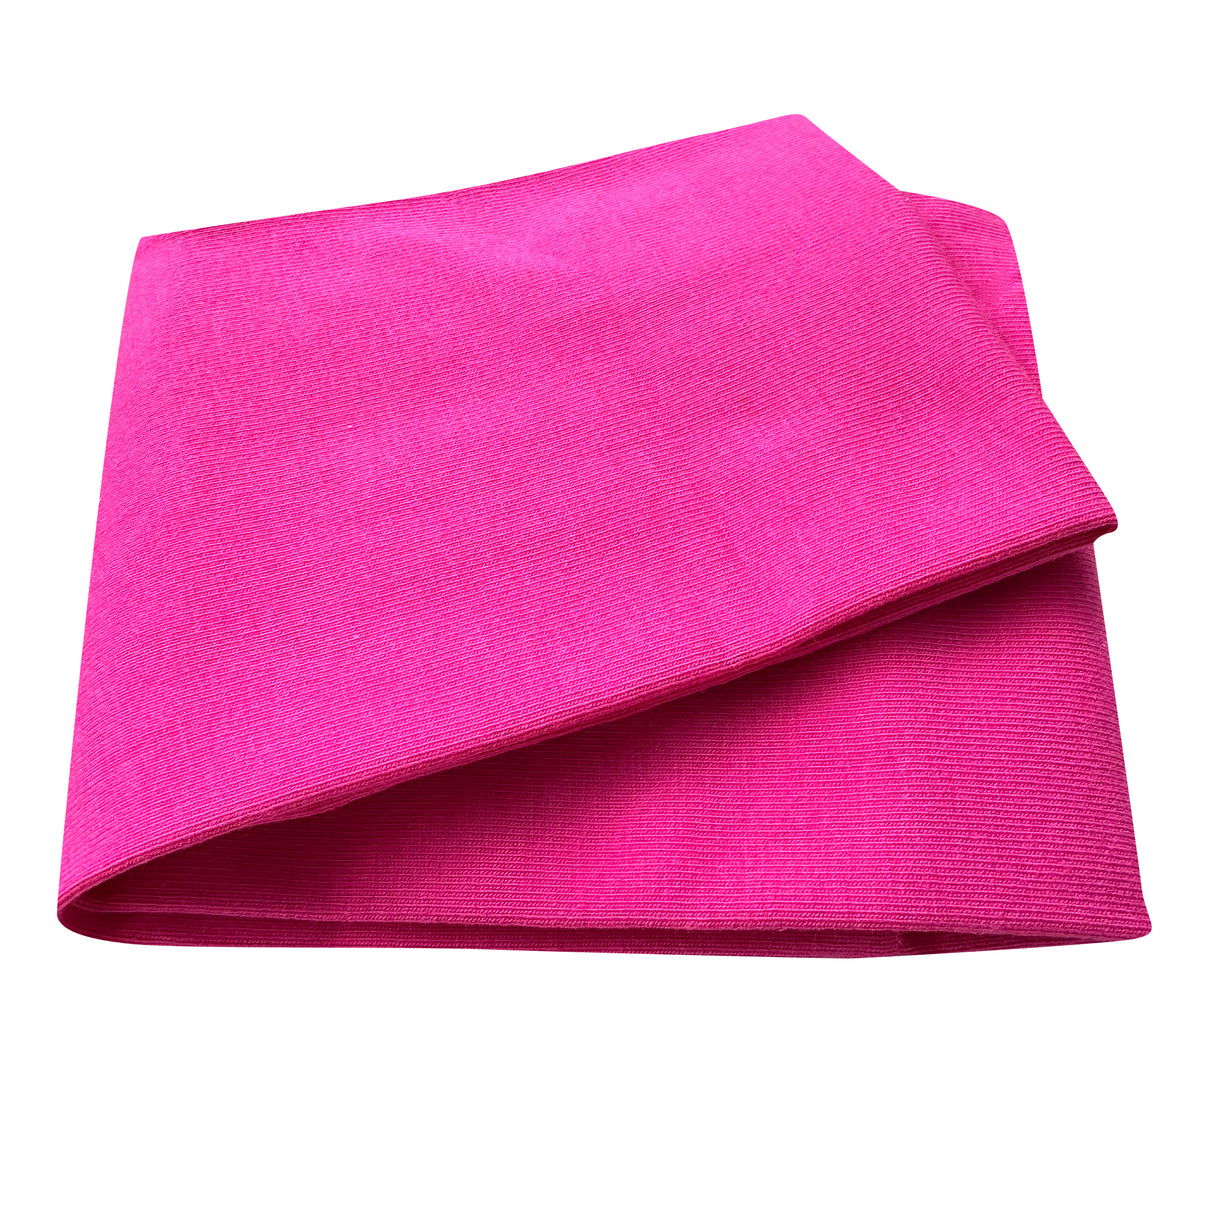 Wollhuhn Elastisches Öko Stirnband / Haarband Jersey Zweilagig Breit Uni/Einfarbig Pink